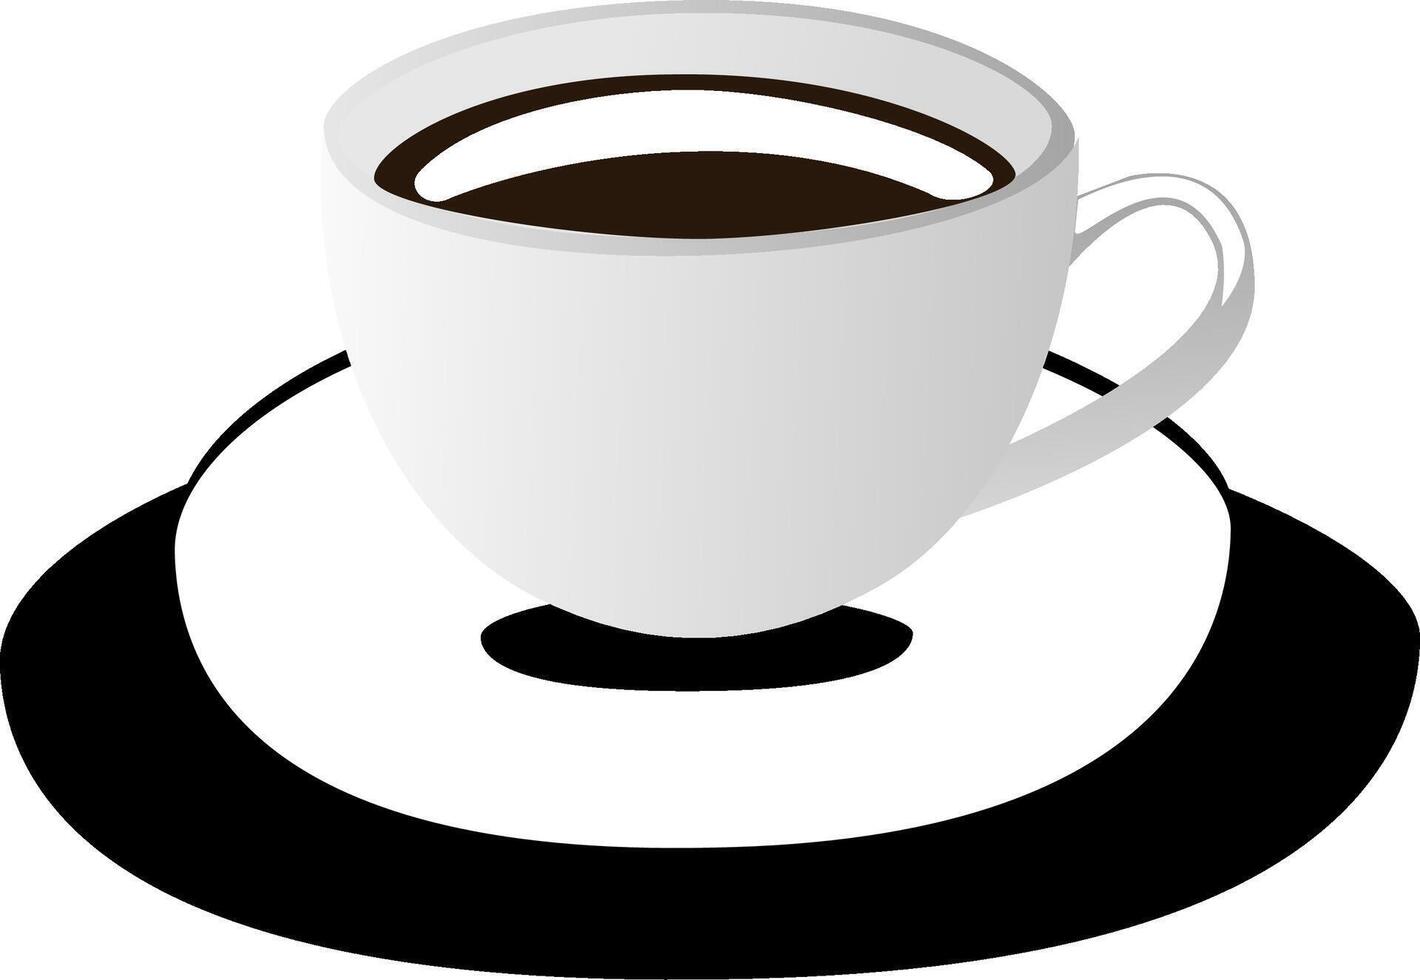 kaffe kopp isolerat på en vit bakgrund. vektor illustration.